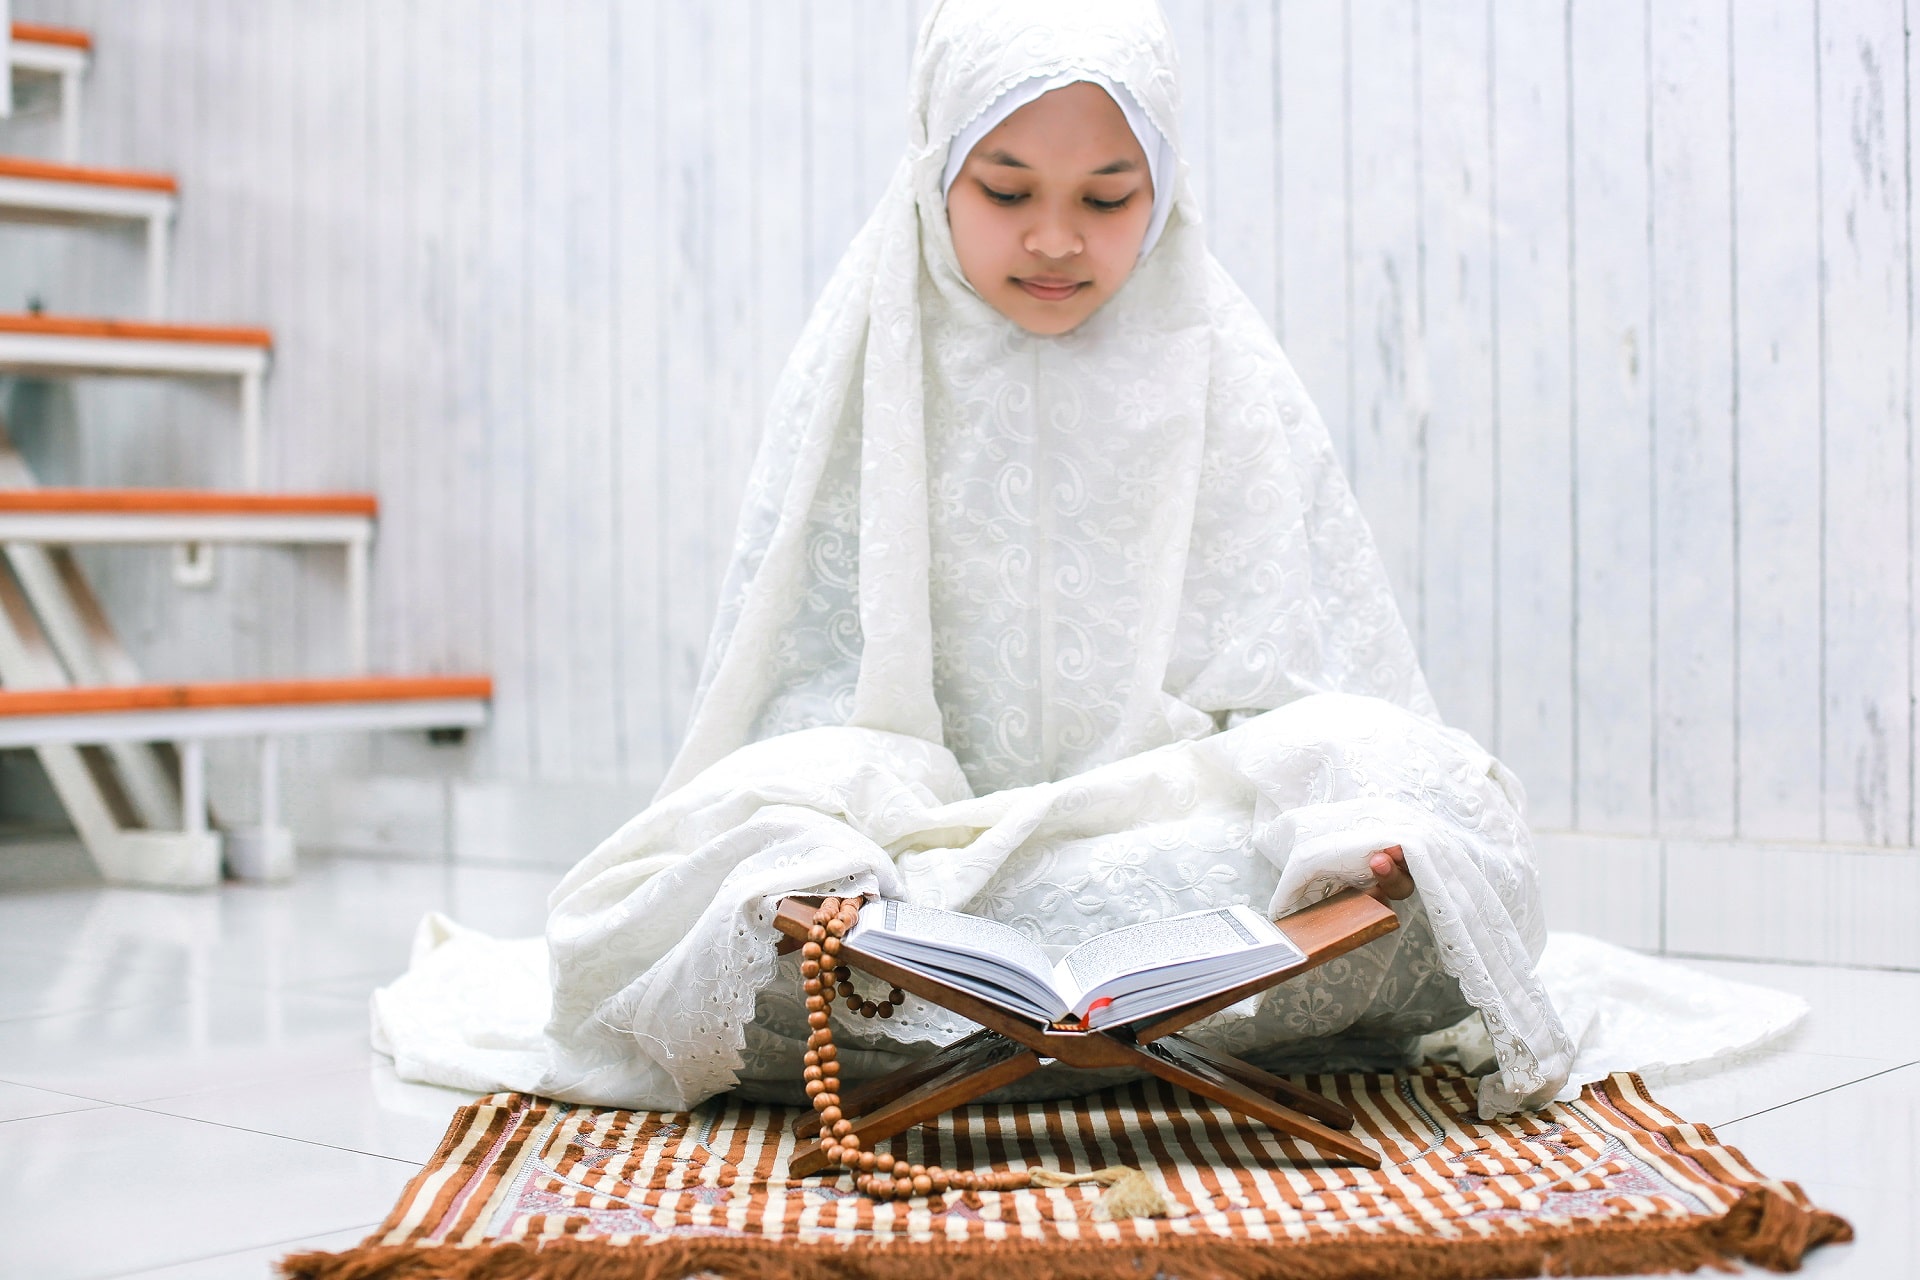 mulim-woman-reading-quran-2021-09-01-02-47-28-utc-min.jpg